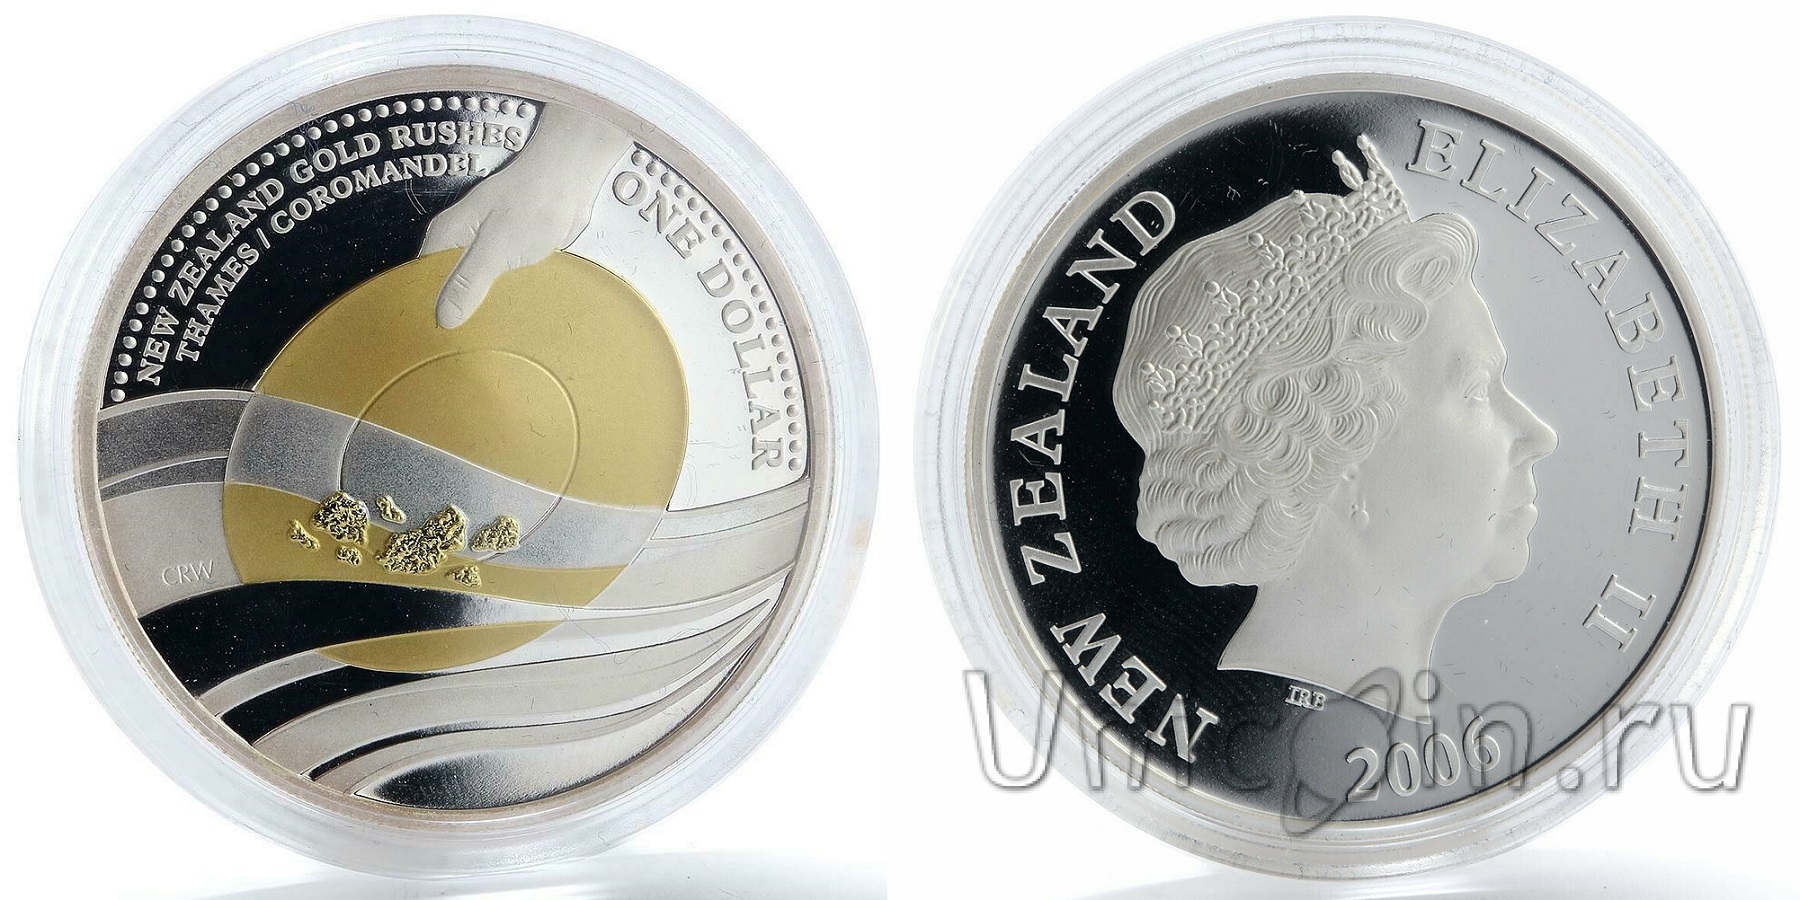 2006 долларов в рублях. Монета 1 доллар новая Зеландия 1996г. 1 Доллар 2006. 10 Долларов 2006 года b2. Султанат Окусси-Амбено 50 долларов 2006.